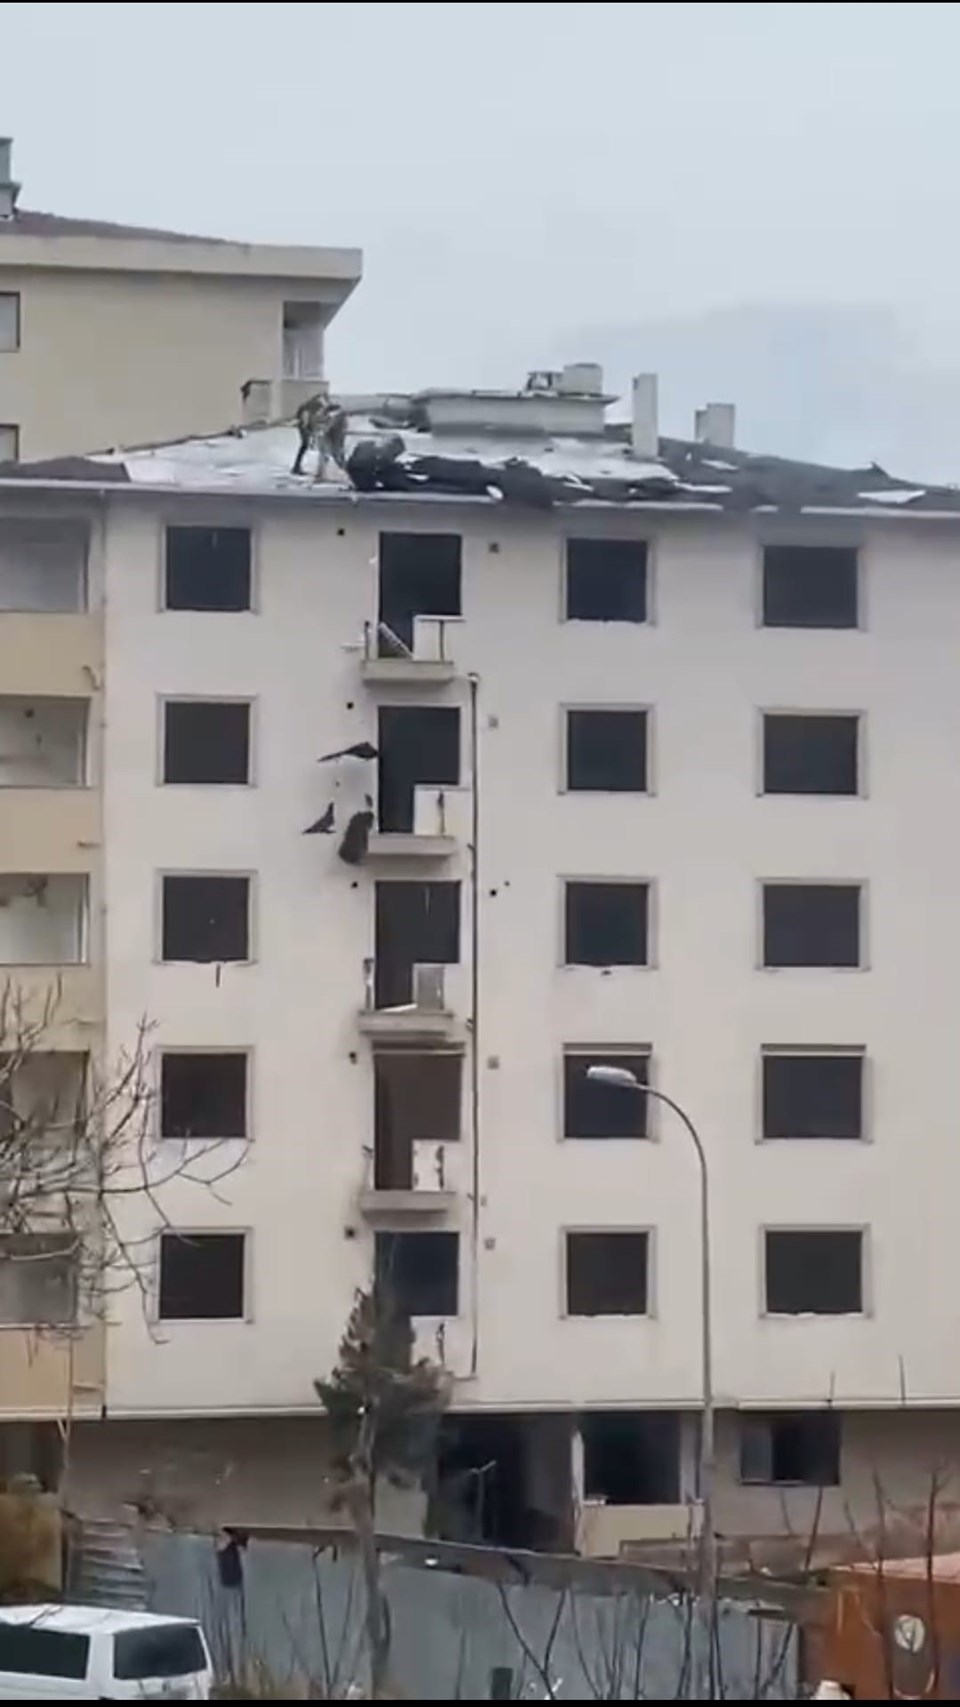 Kadıköy’de 6 katlı binada tehlikeli çalışma - 1